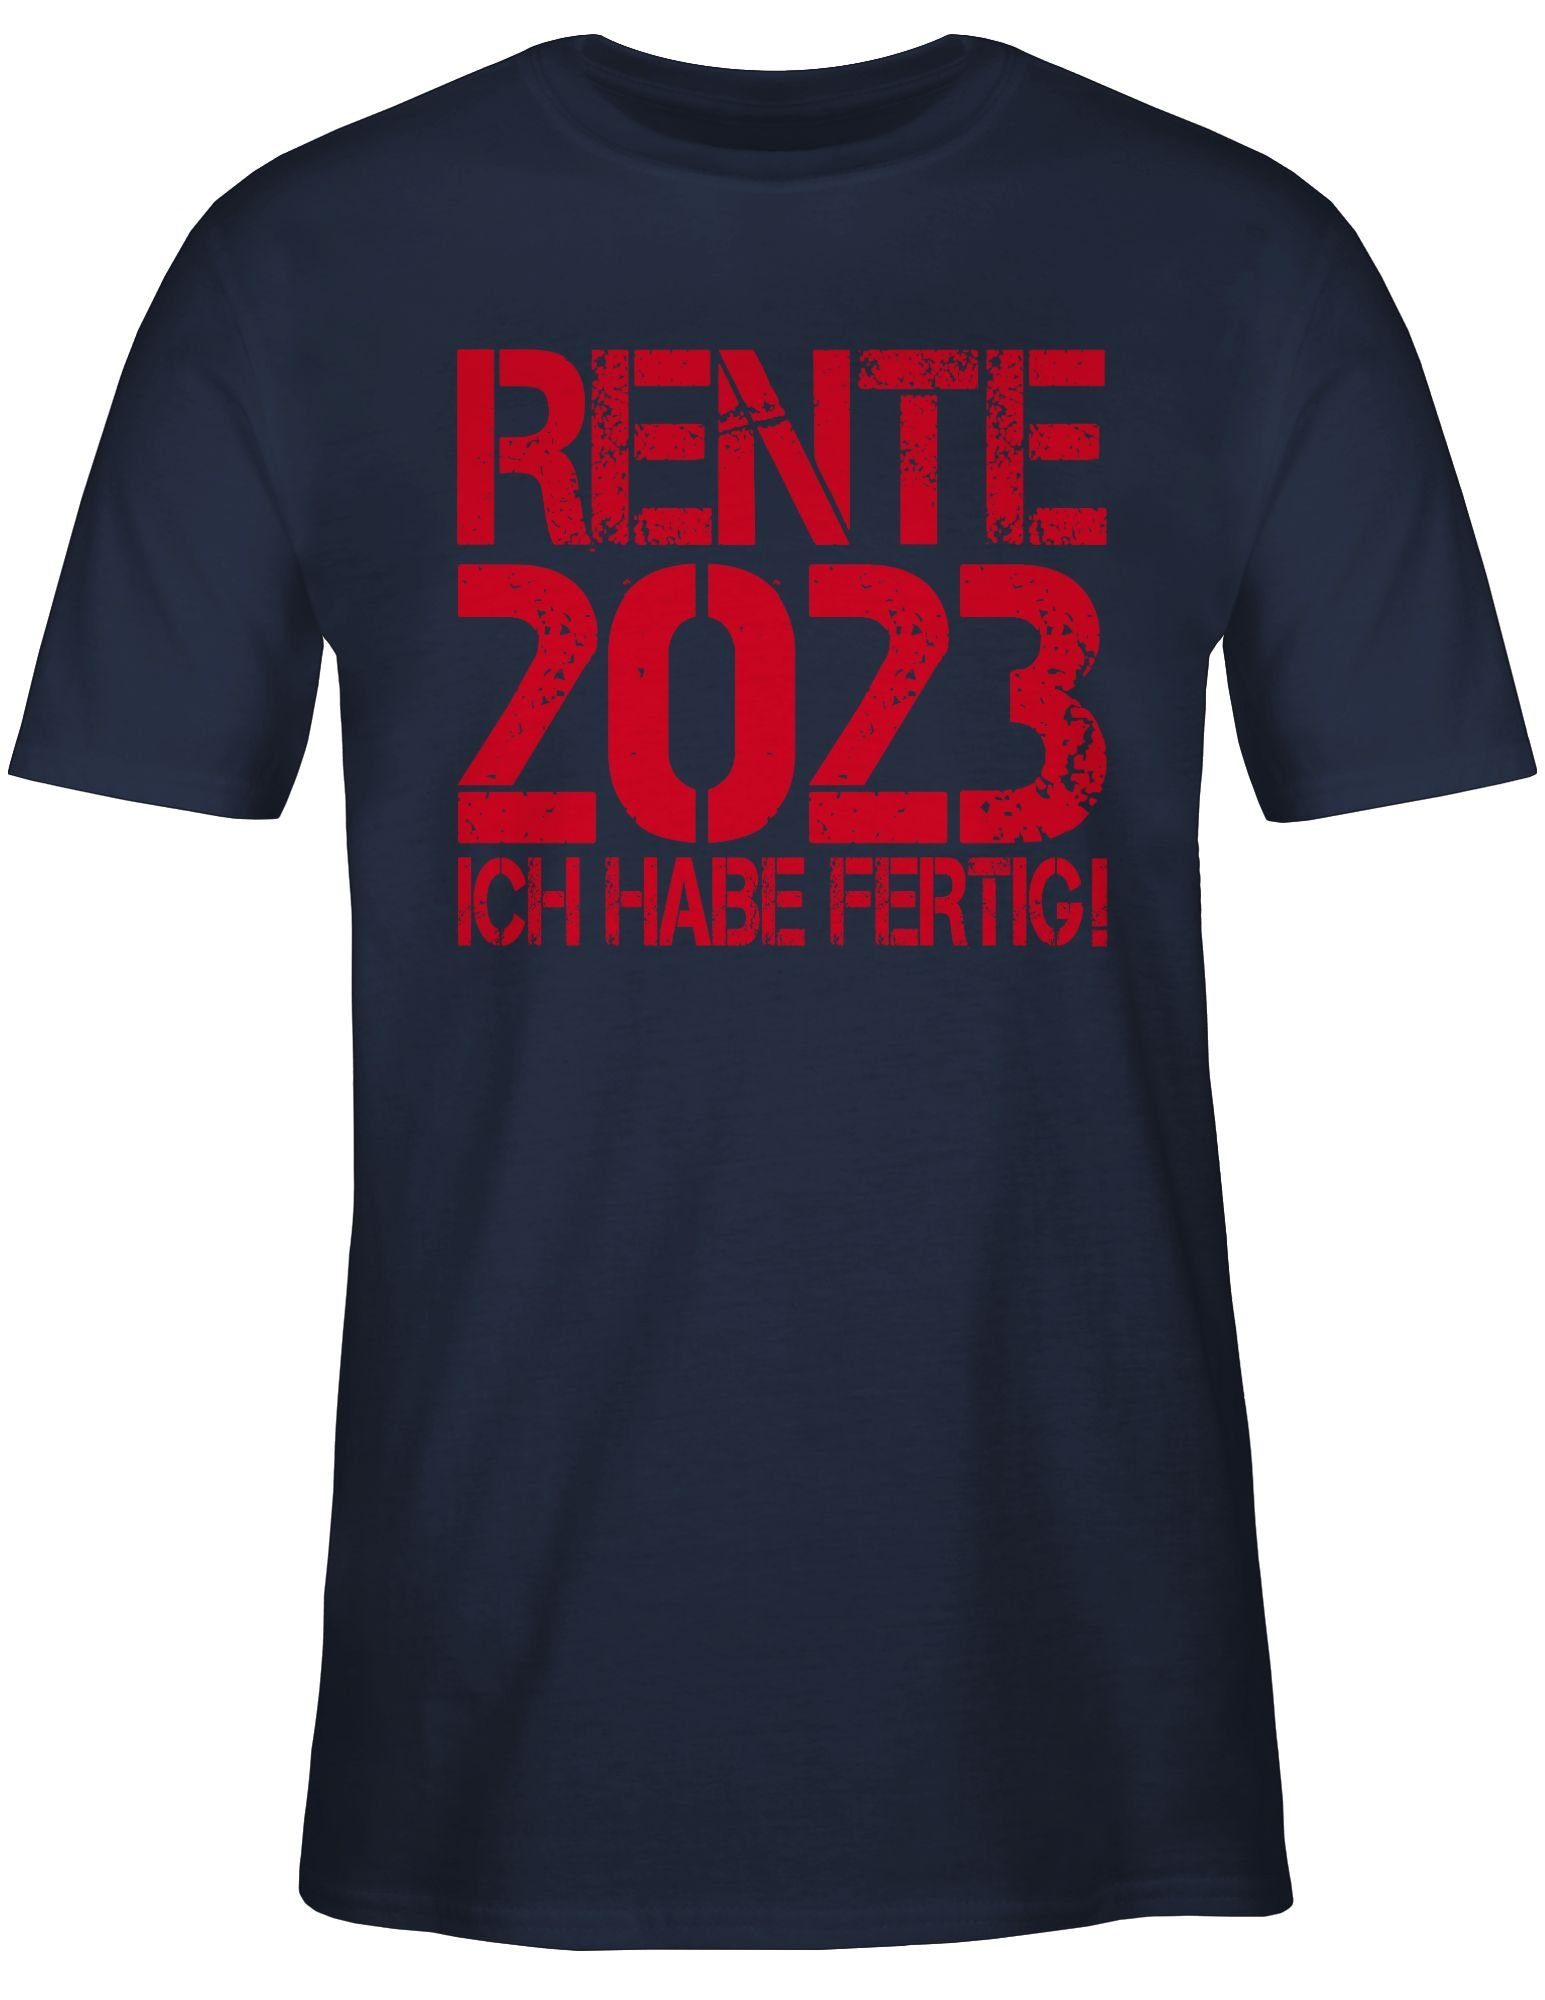 fertig! Ich Rentner 2 Shirtracer Geschenk habe Navy T-Shirt Rente Blau 2023 -